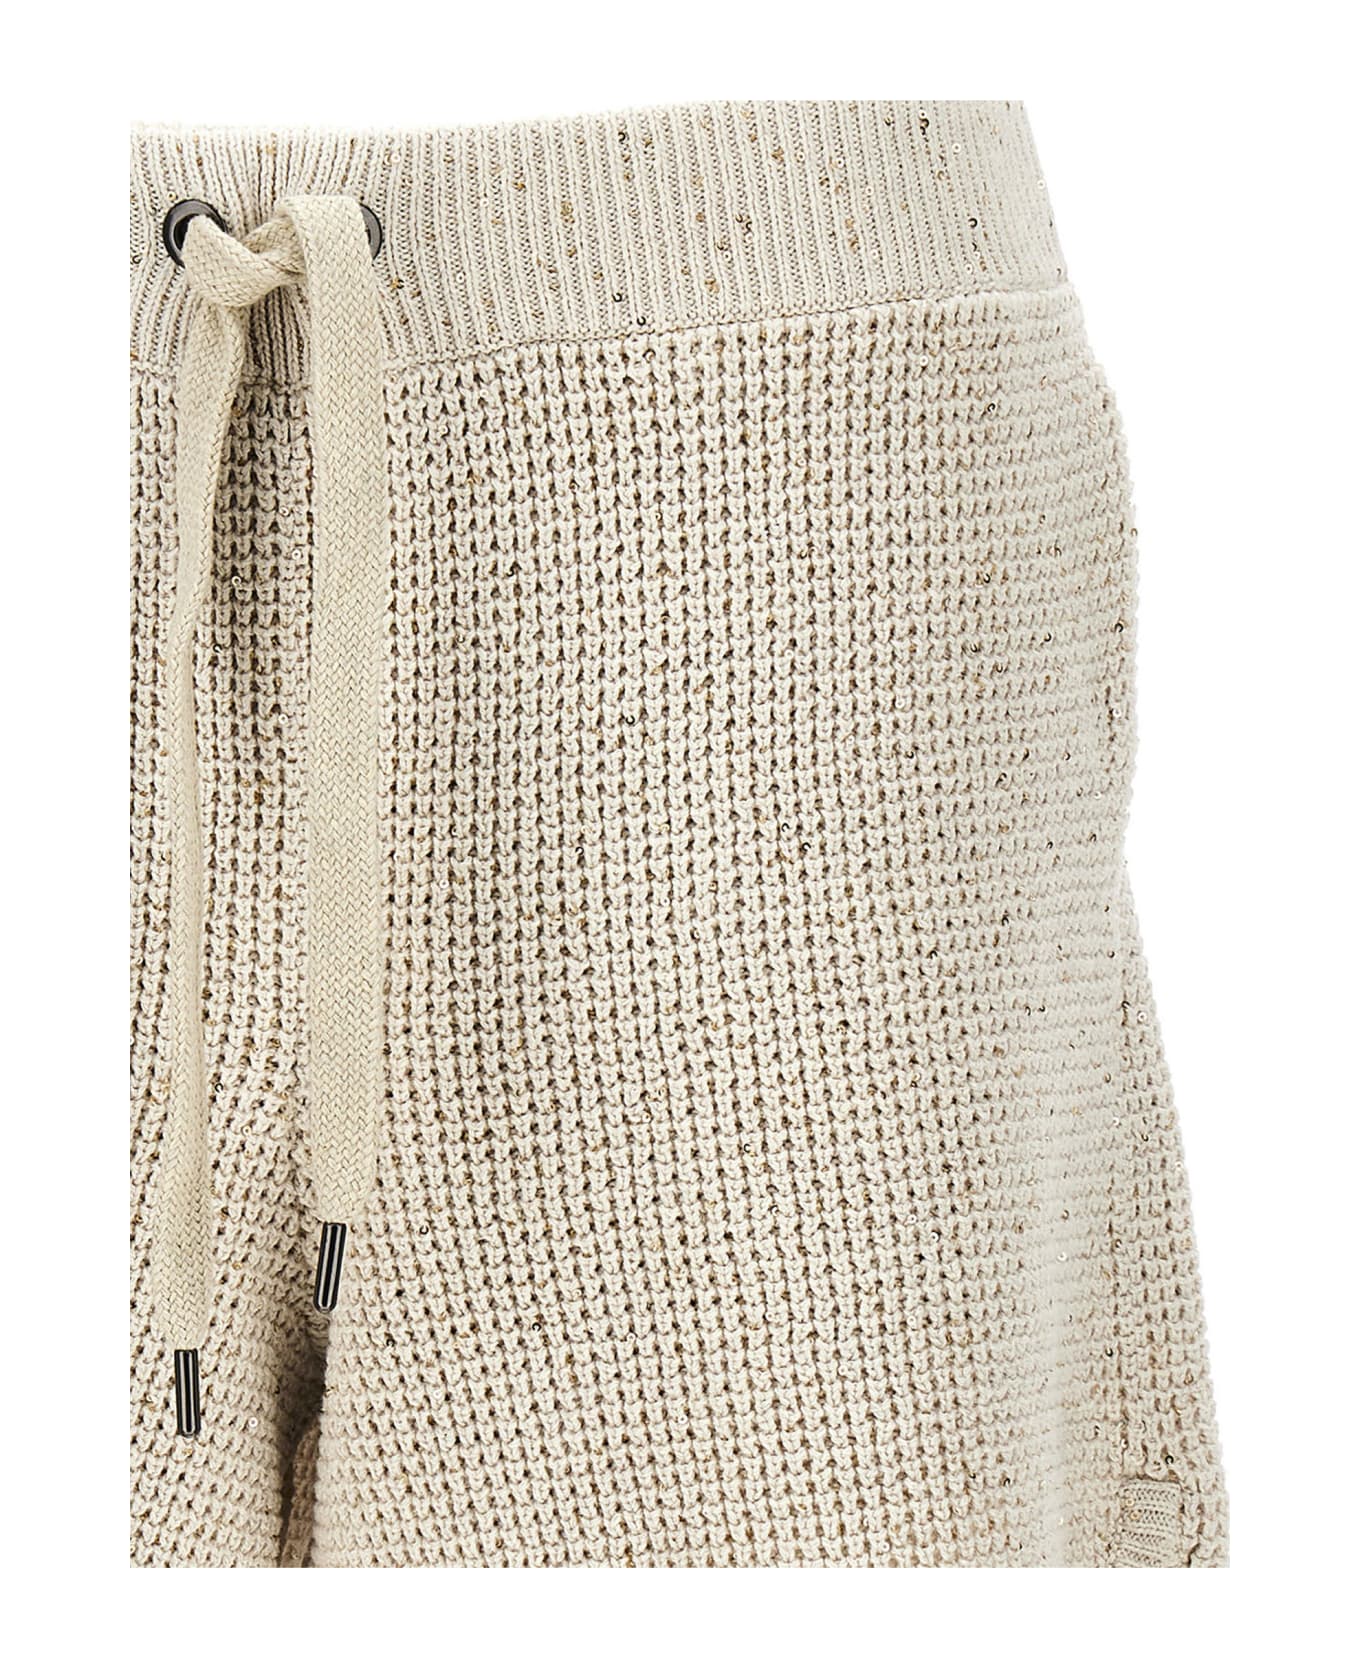 Brunello Cucinelli Sequin Knit Shorts - Beige